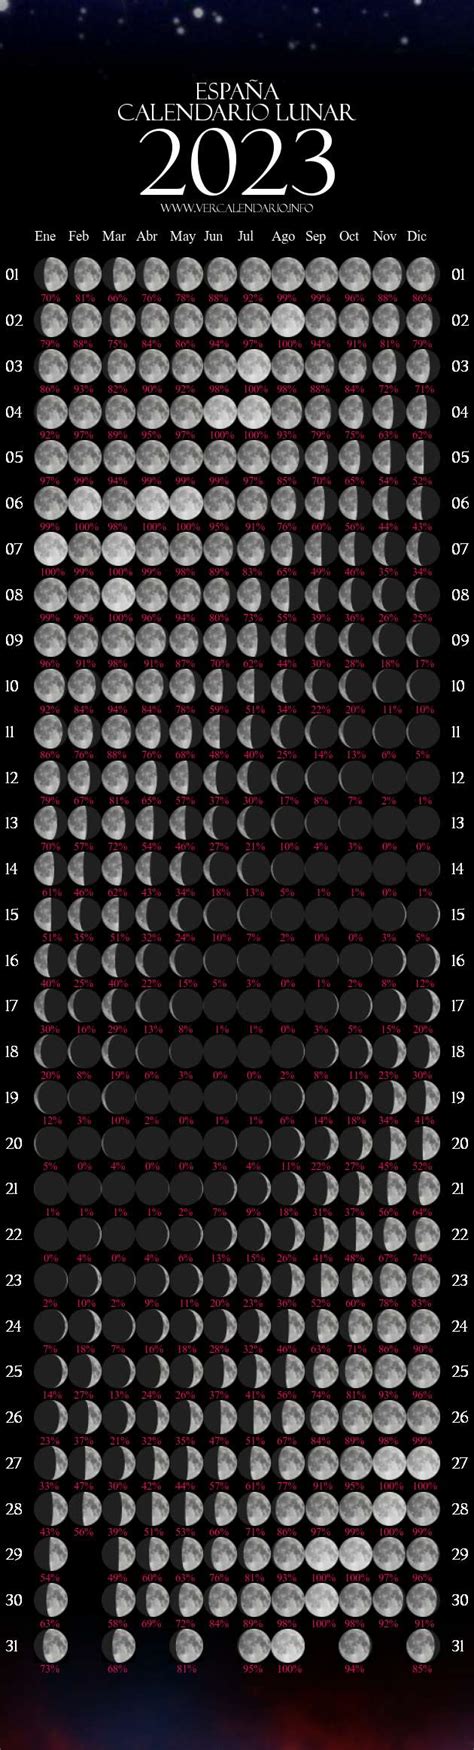 Calendario Lunar 2023 España